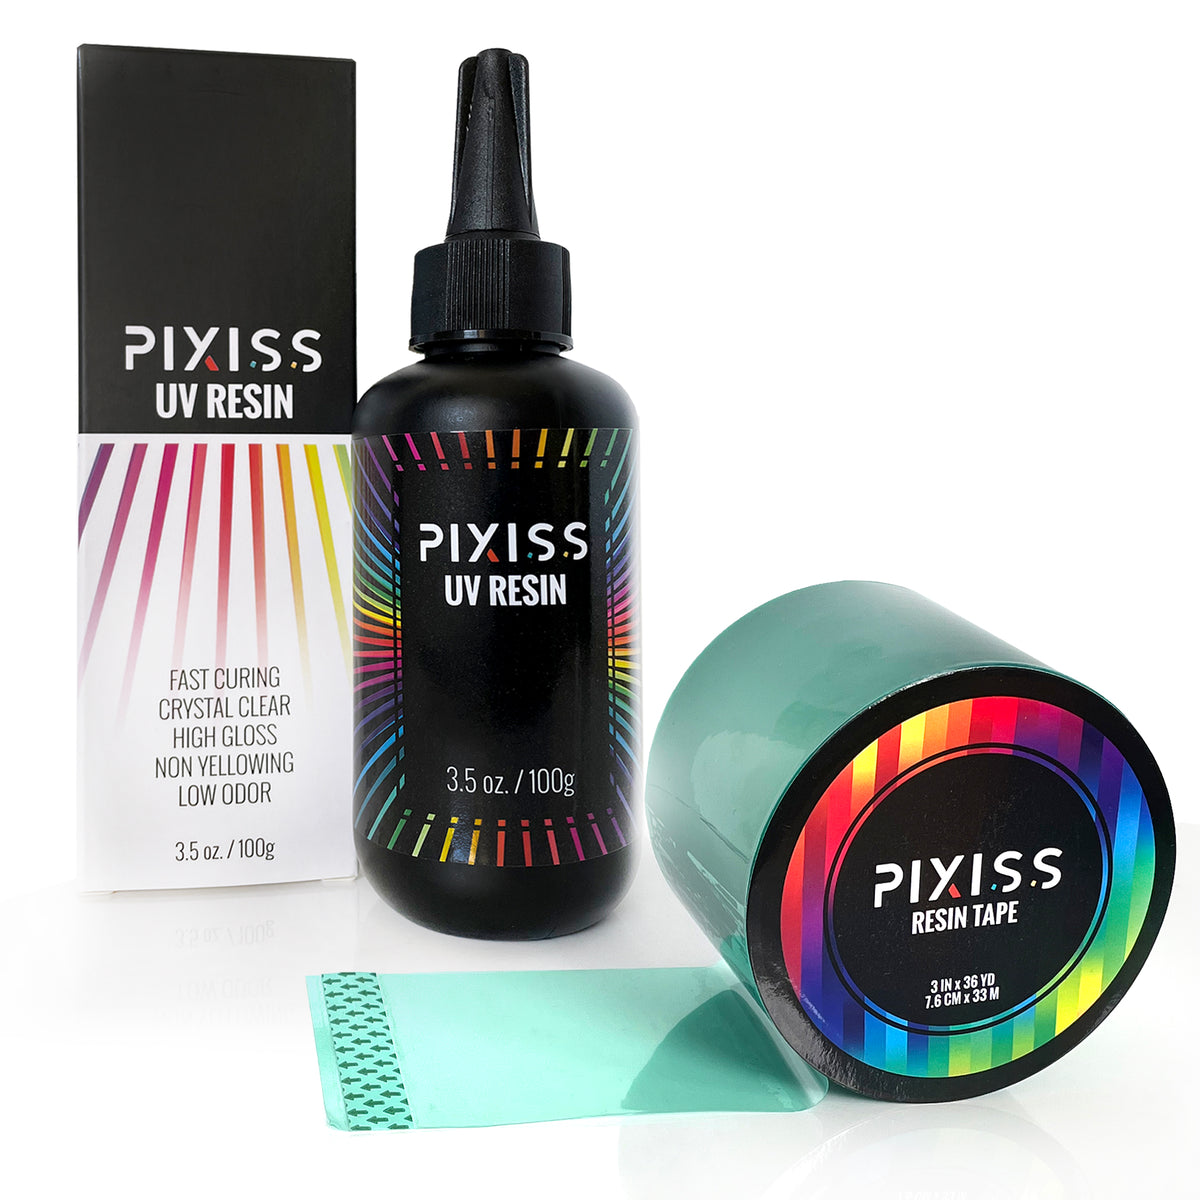 Pixiss UV Resin & Resin Tape